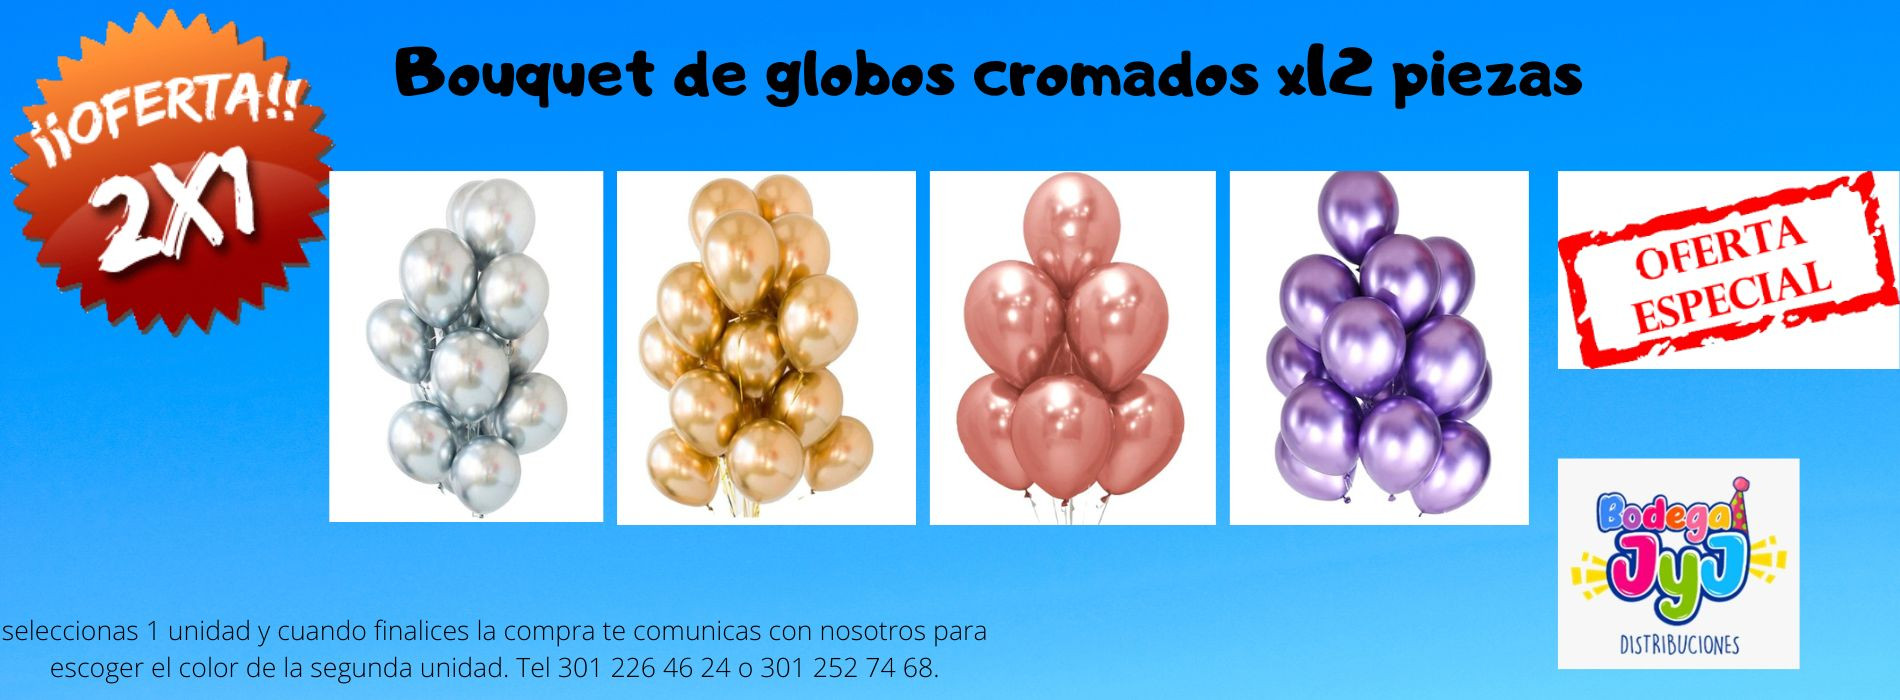 https://www.pinateriatufiesta.com/bouquet-de-globos-r12-x12-cromados-